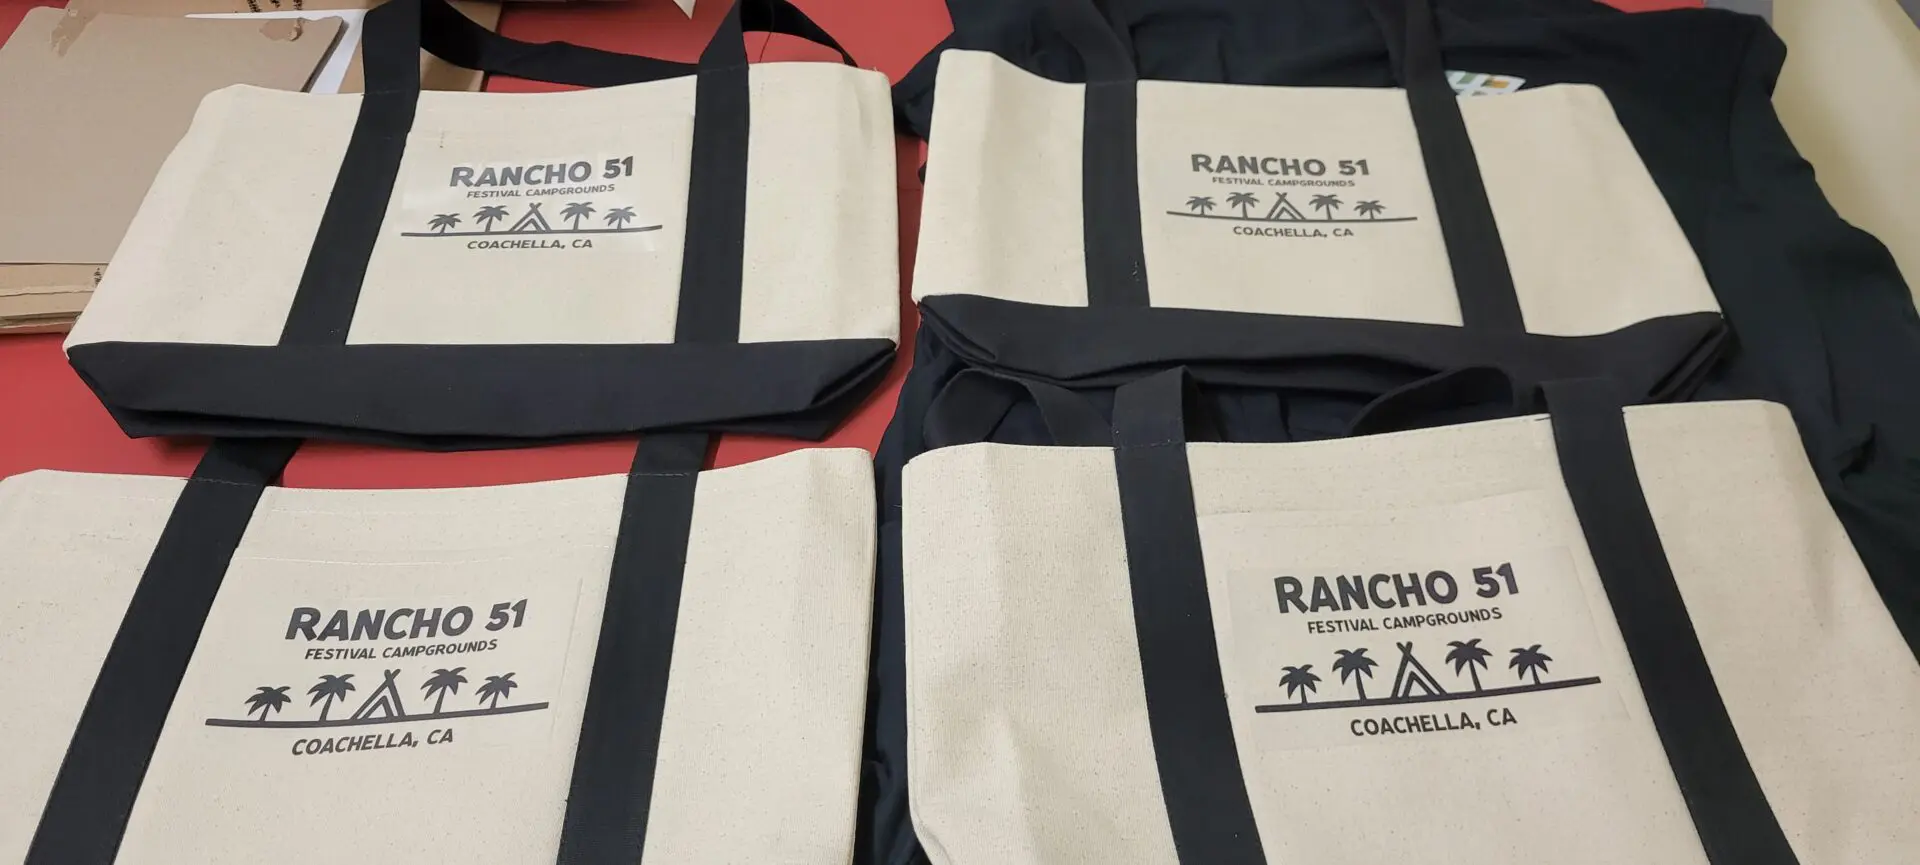 A bunch of bags written rancho 51 kept side by side